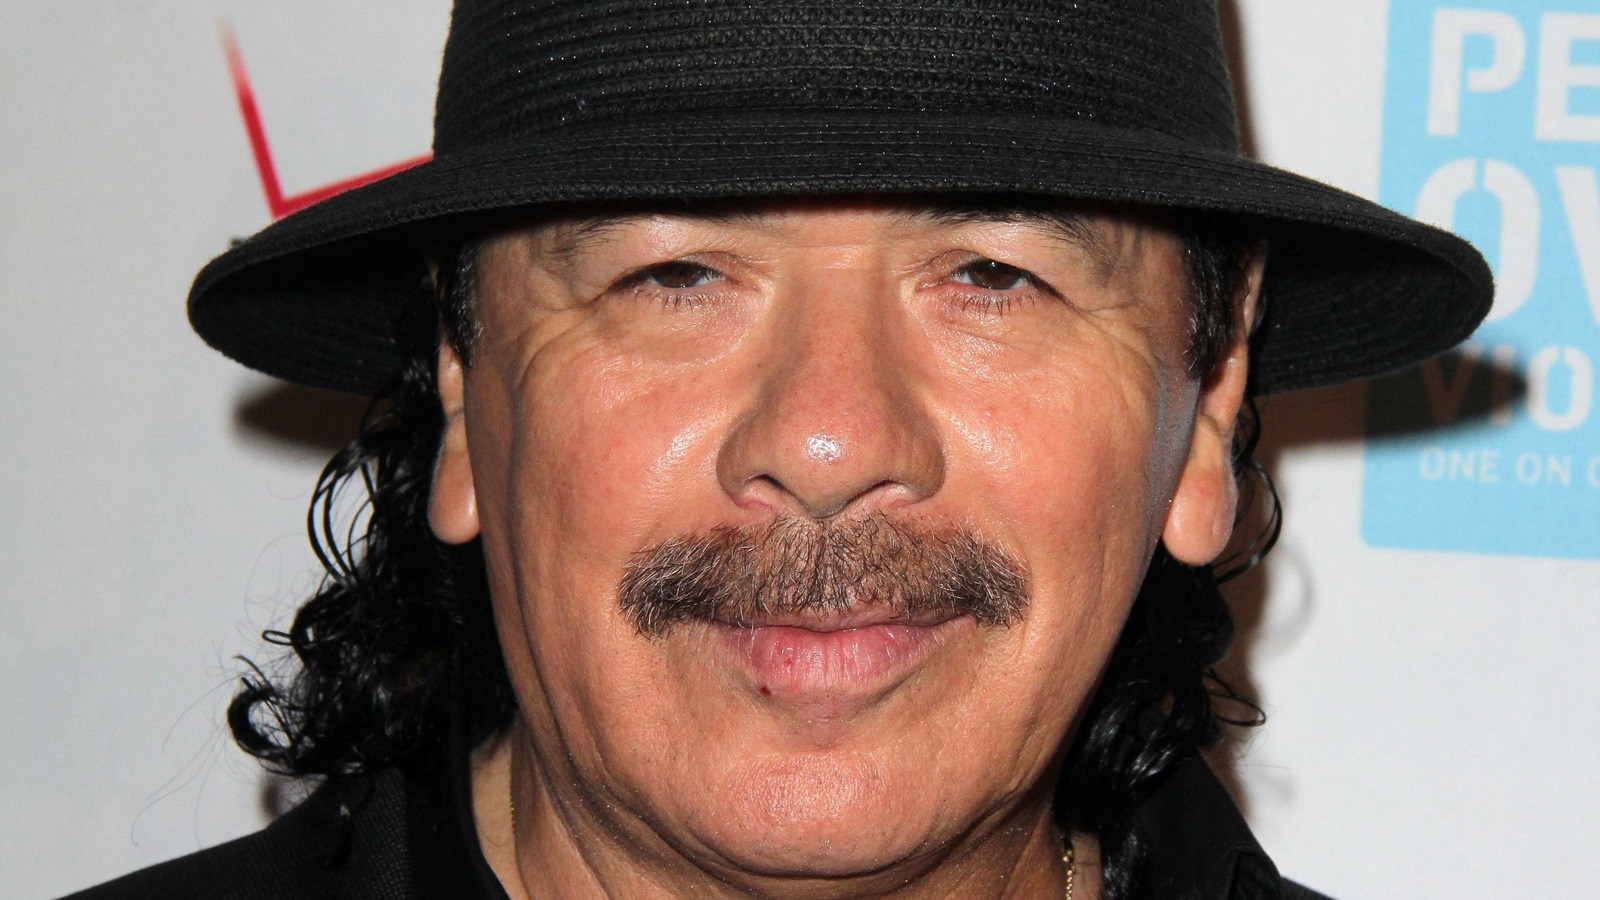 Etats-Unis : après un malaise en plein concert, la légende Carlos Santana « va mieux »